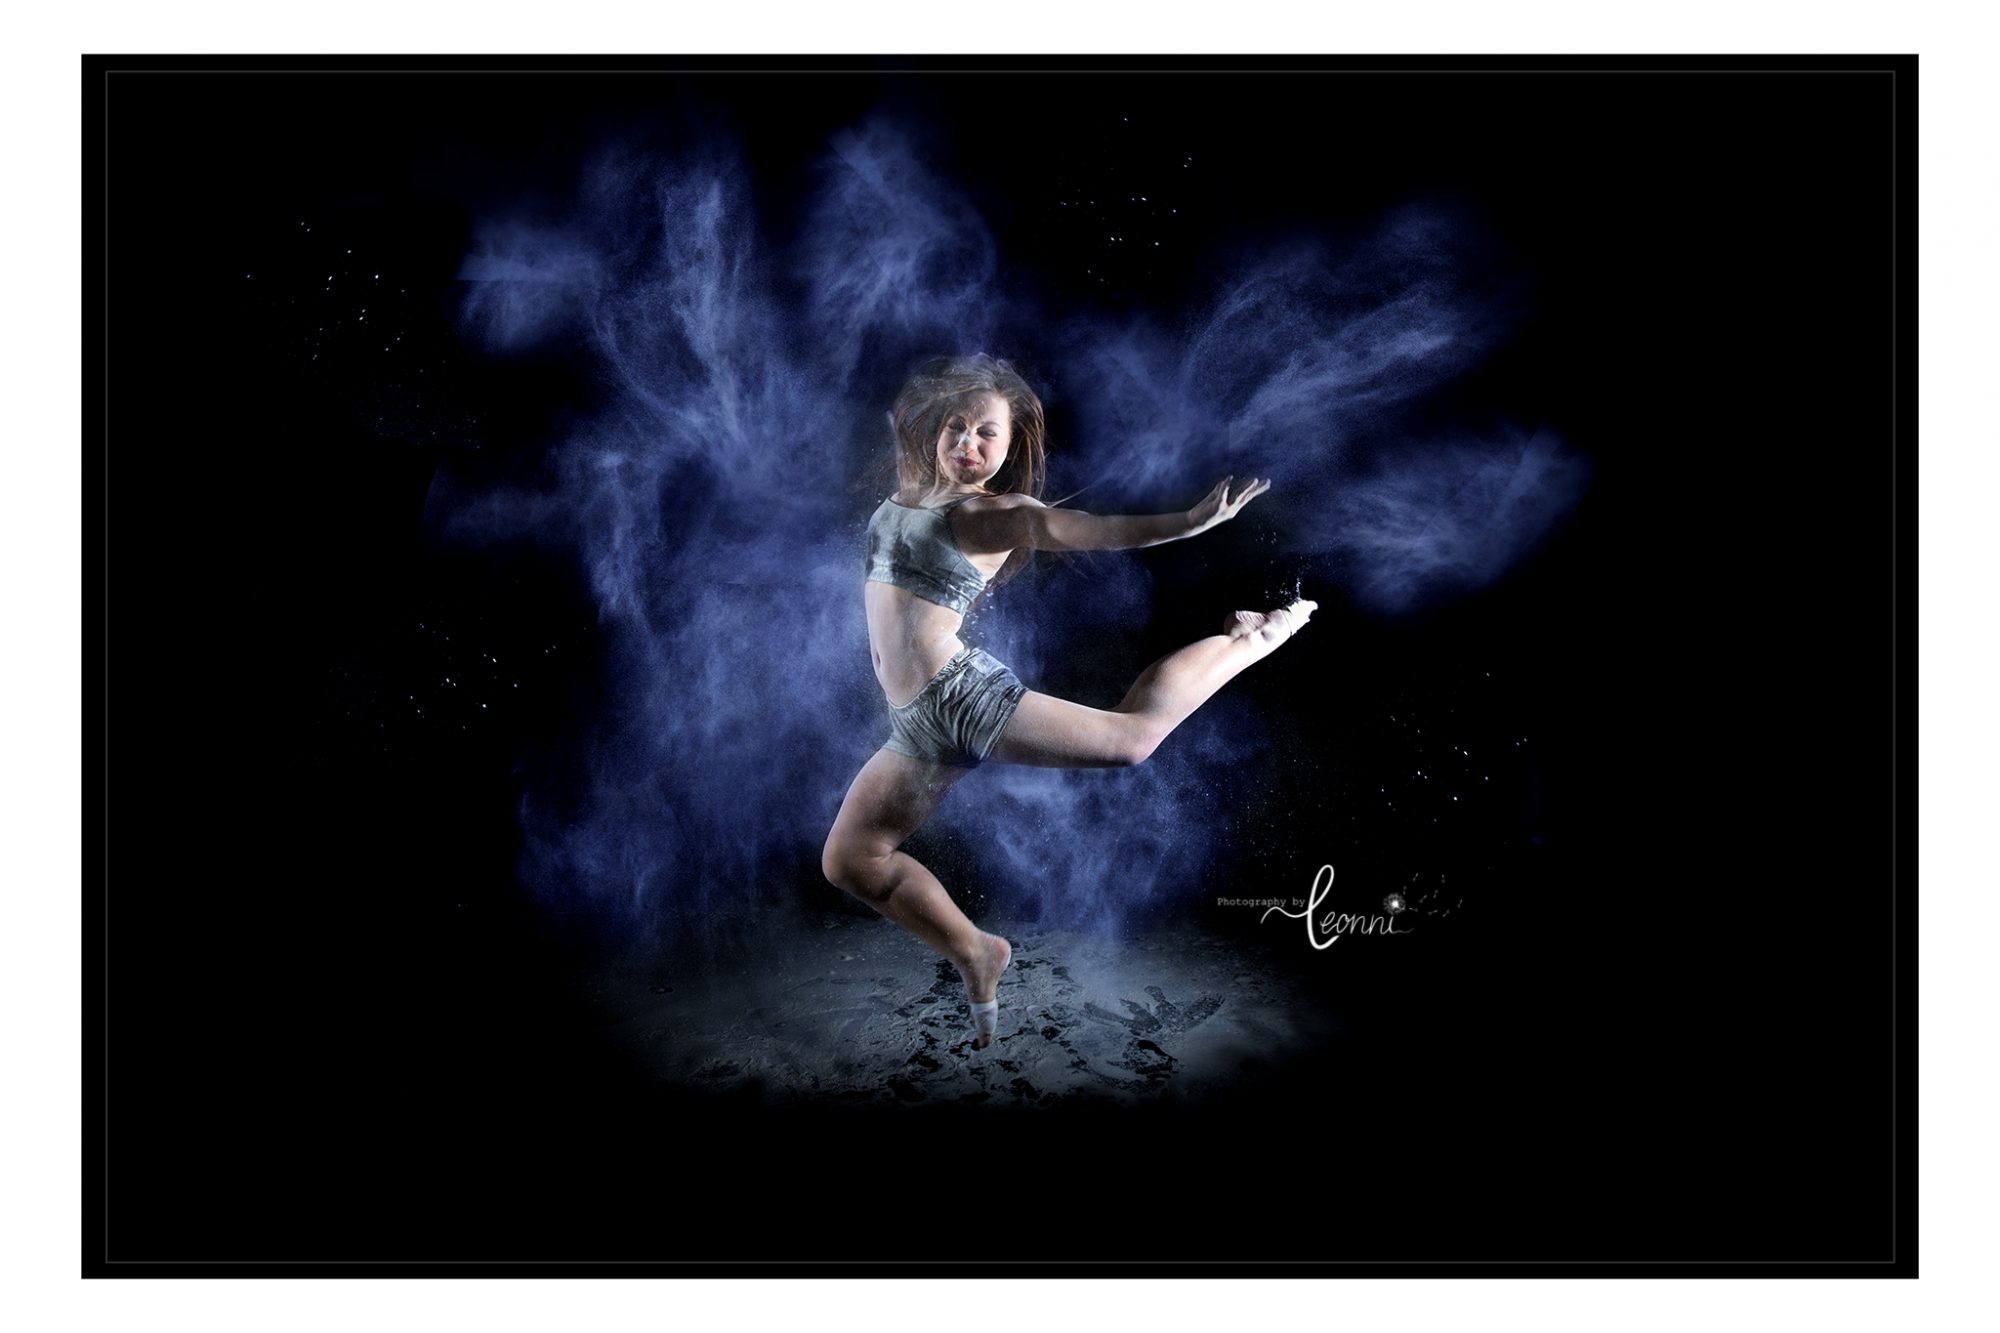 Flour dance photography